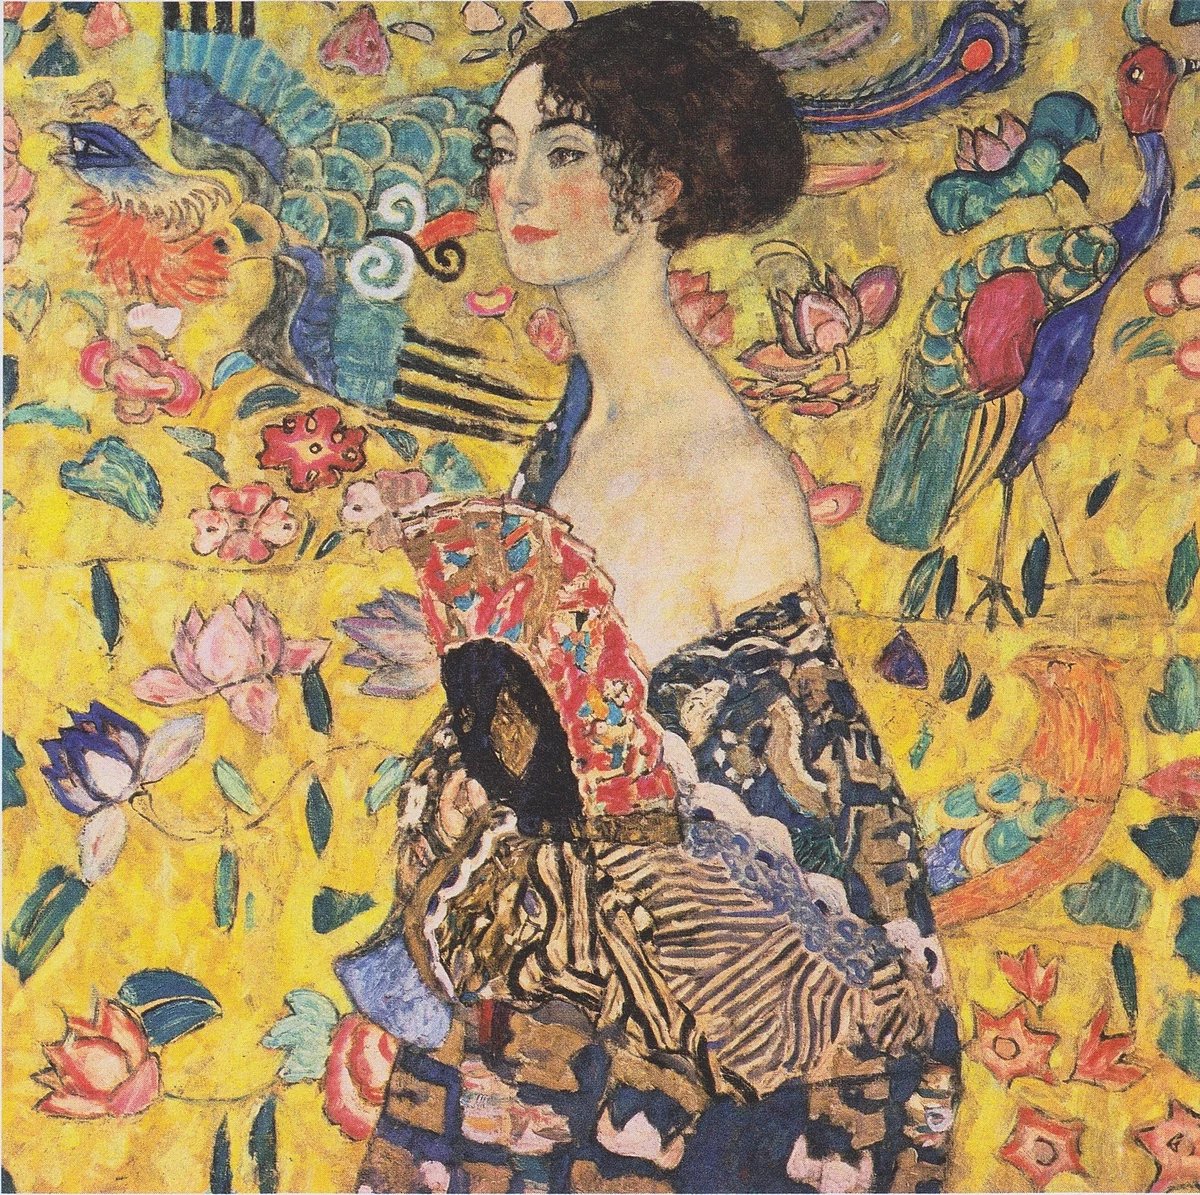 Ünlü ressam Gustav Klimt'in 'Yelpazeli Kadın' tablosu 10 dakikalık bir açık artırmanın ardından 85.3 milyon sterline alıcı buldu.